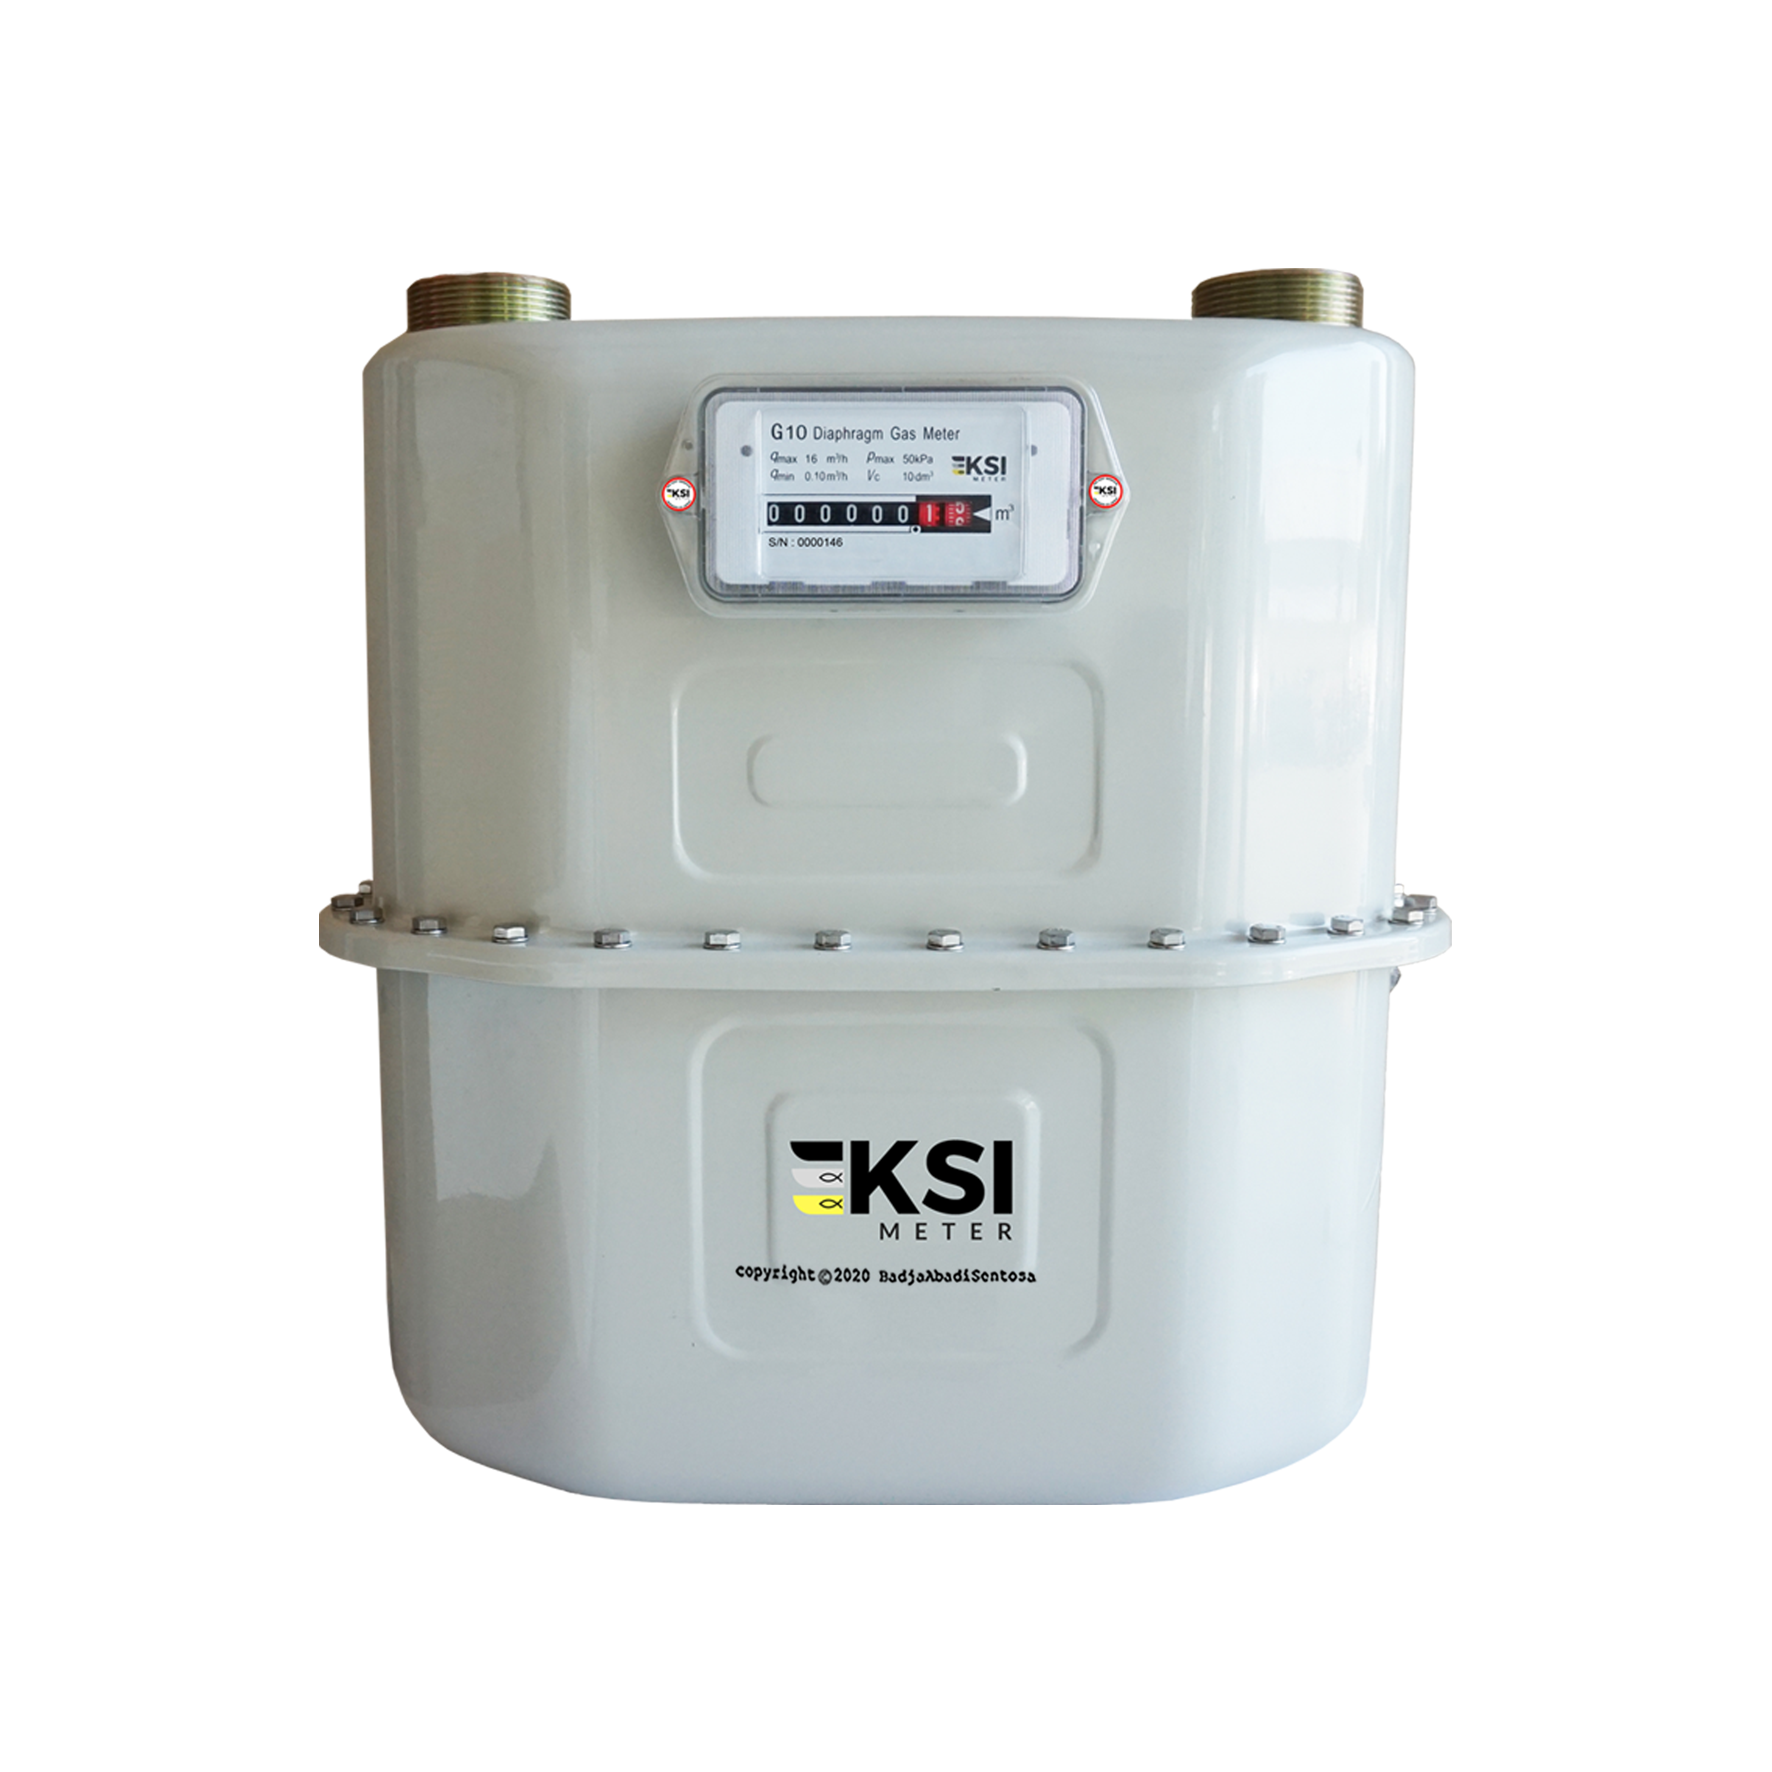 KSI - Industrial Diaphragm Gas Meter